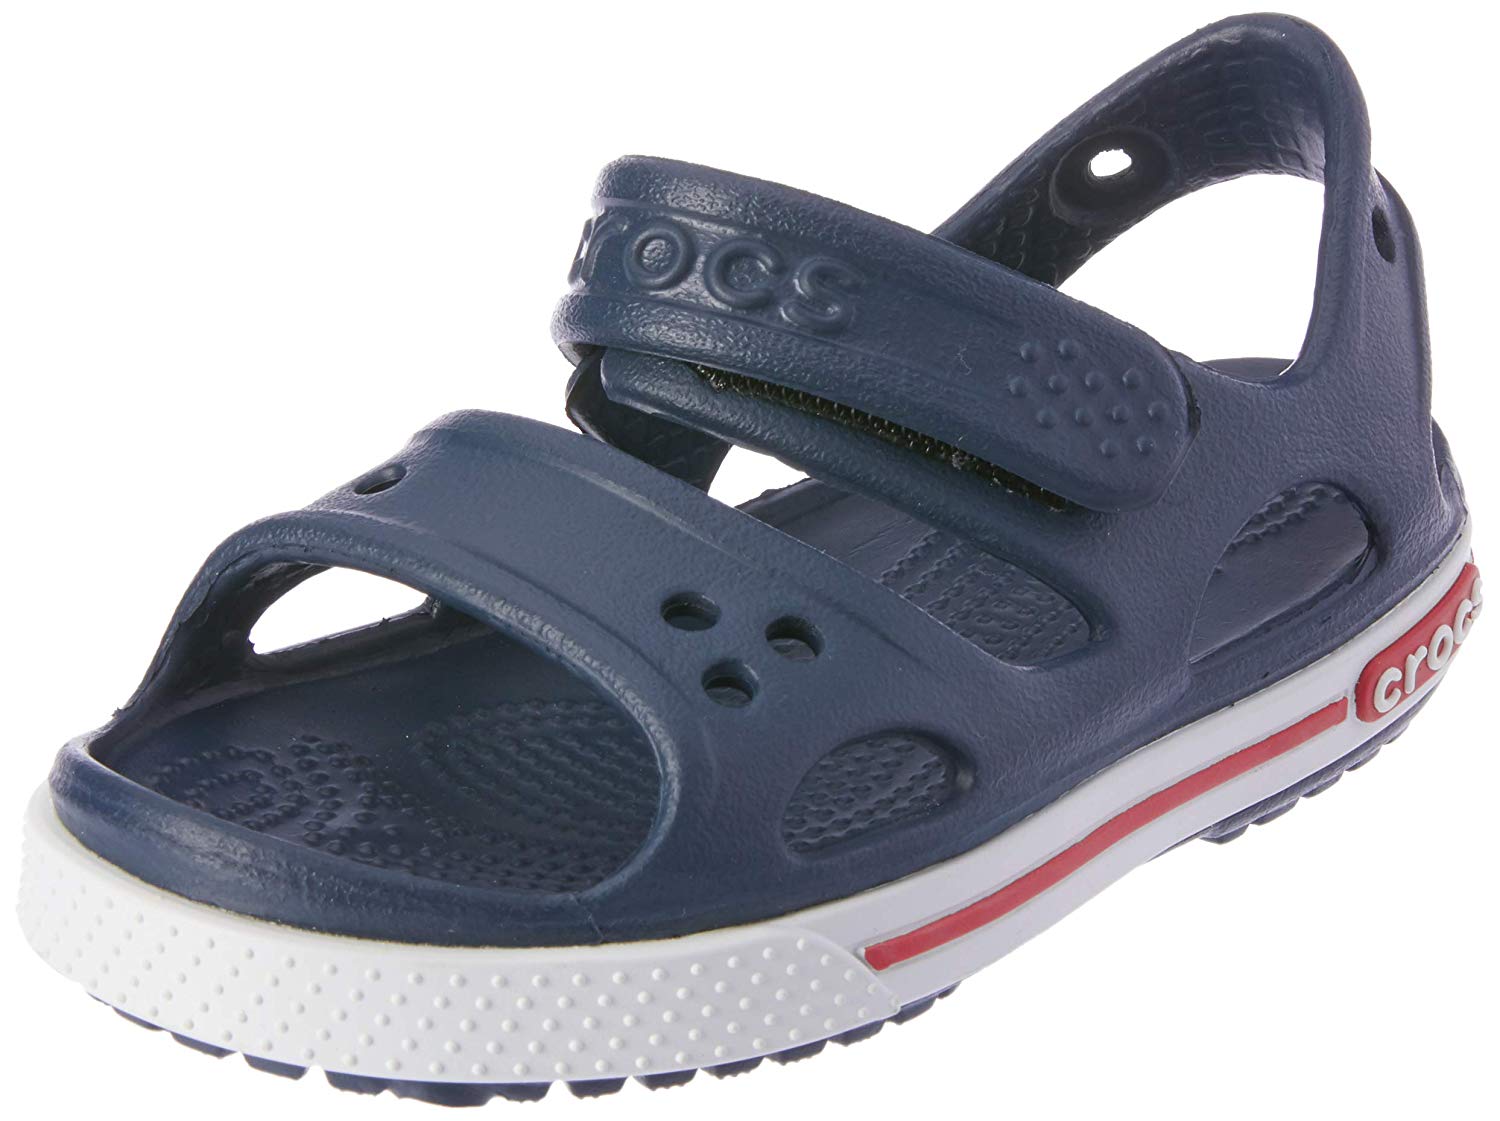 girls croc sandals